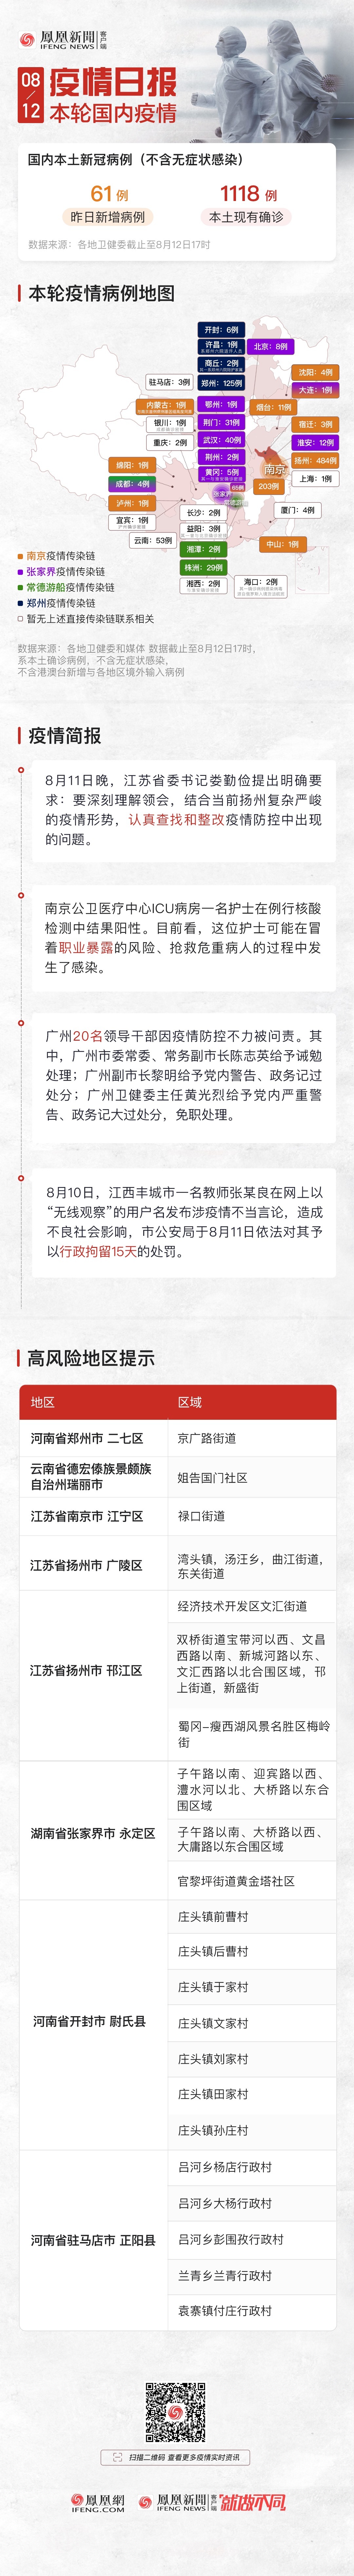 8月12日疫情日报｜广州20名官员被问责 南京一ICU护士核酸检测阳性